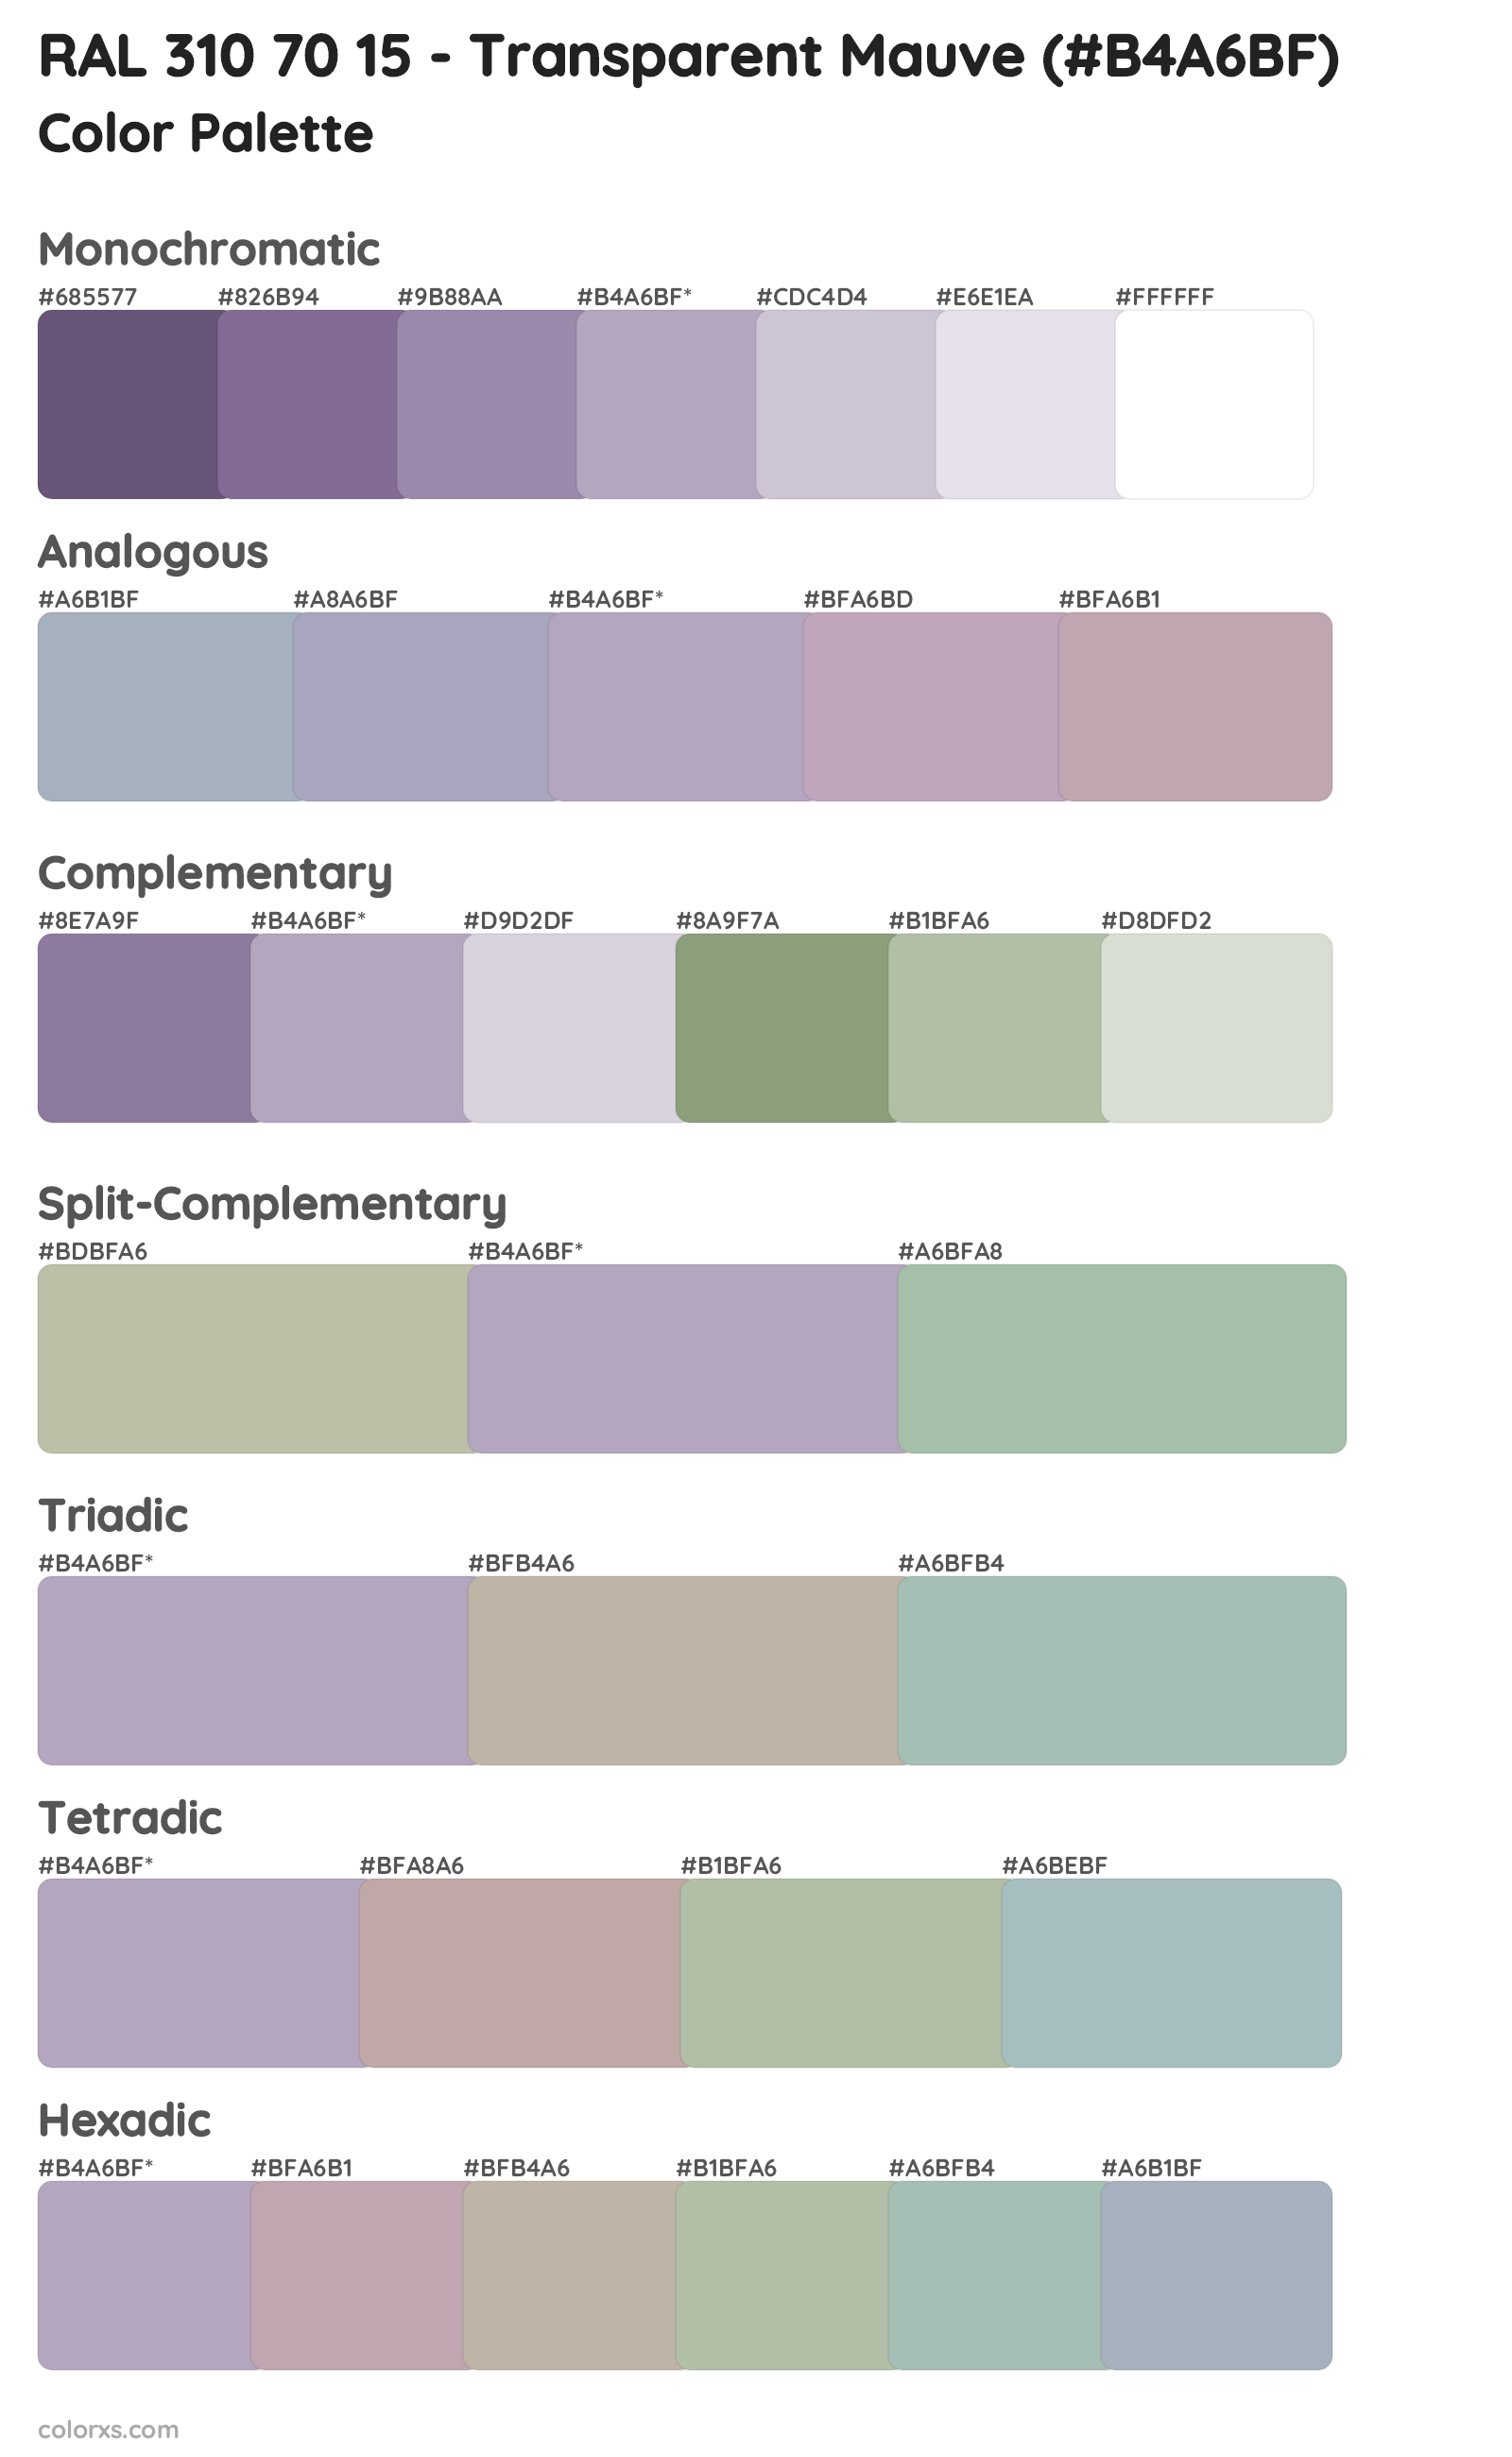 RAL 310 70 15 - Transparent Mauve Color Scheme Palettes